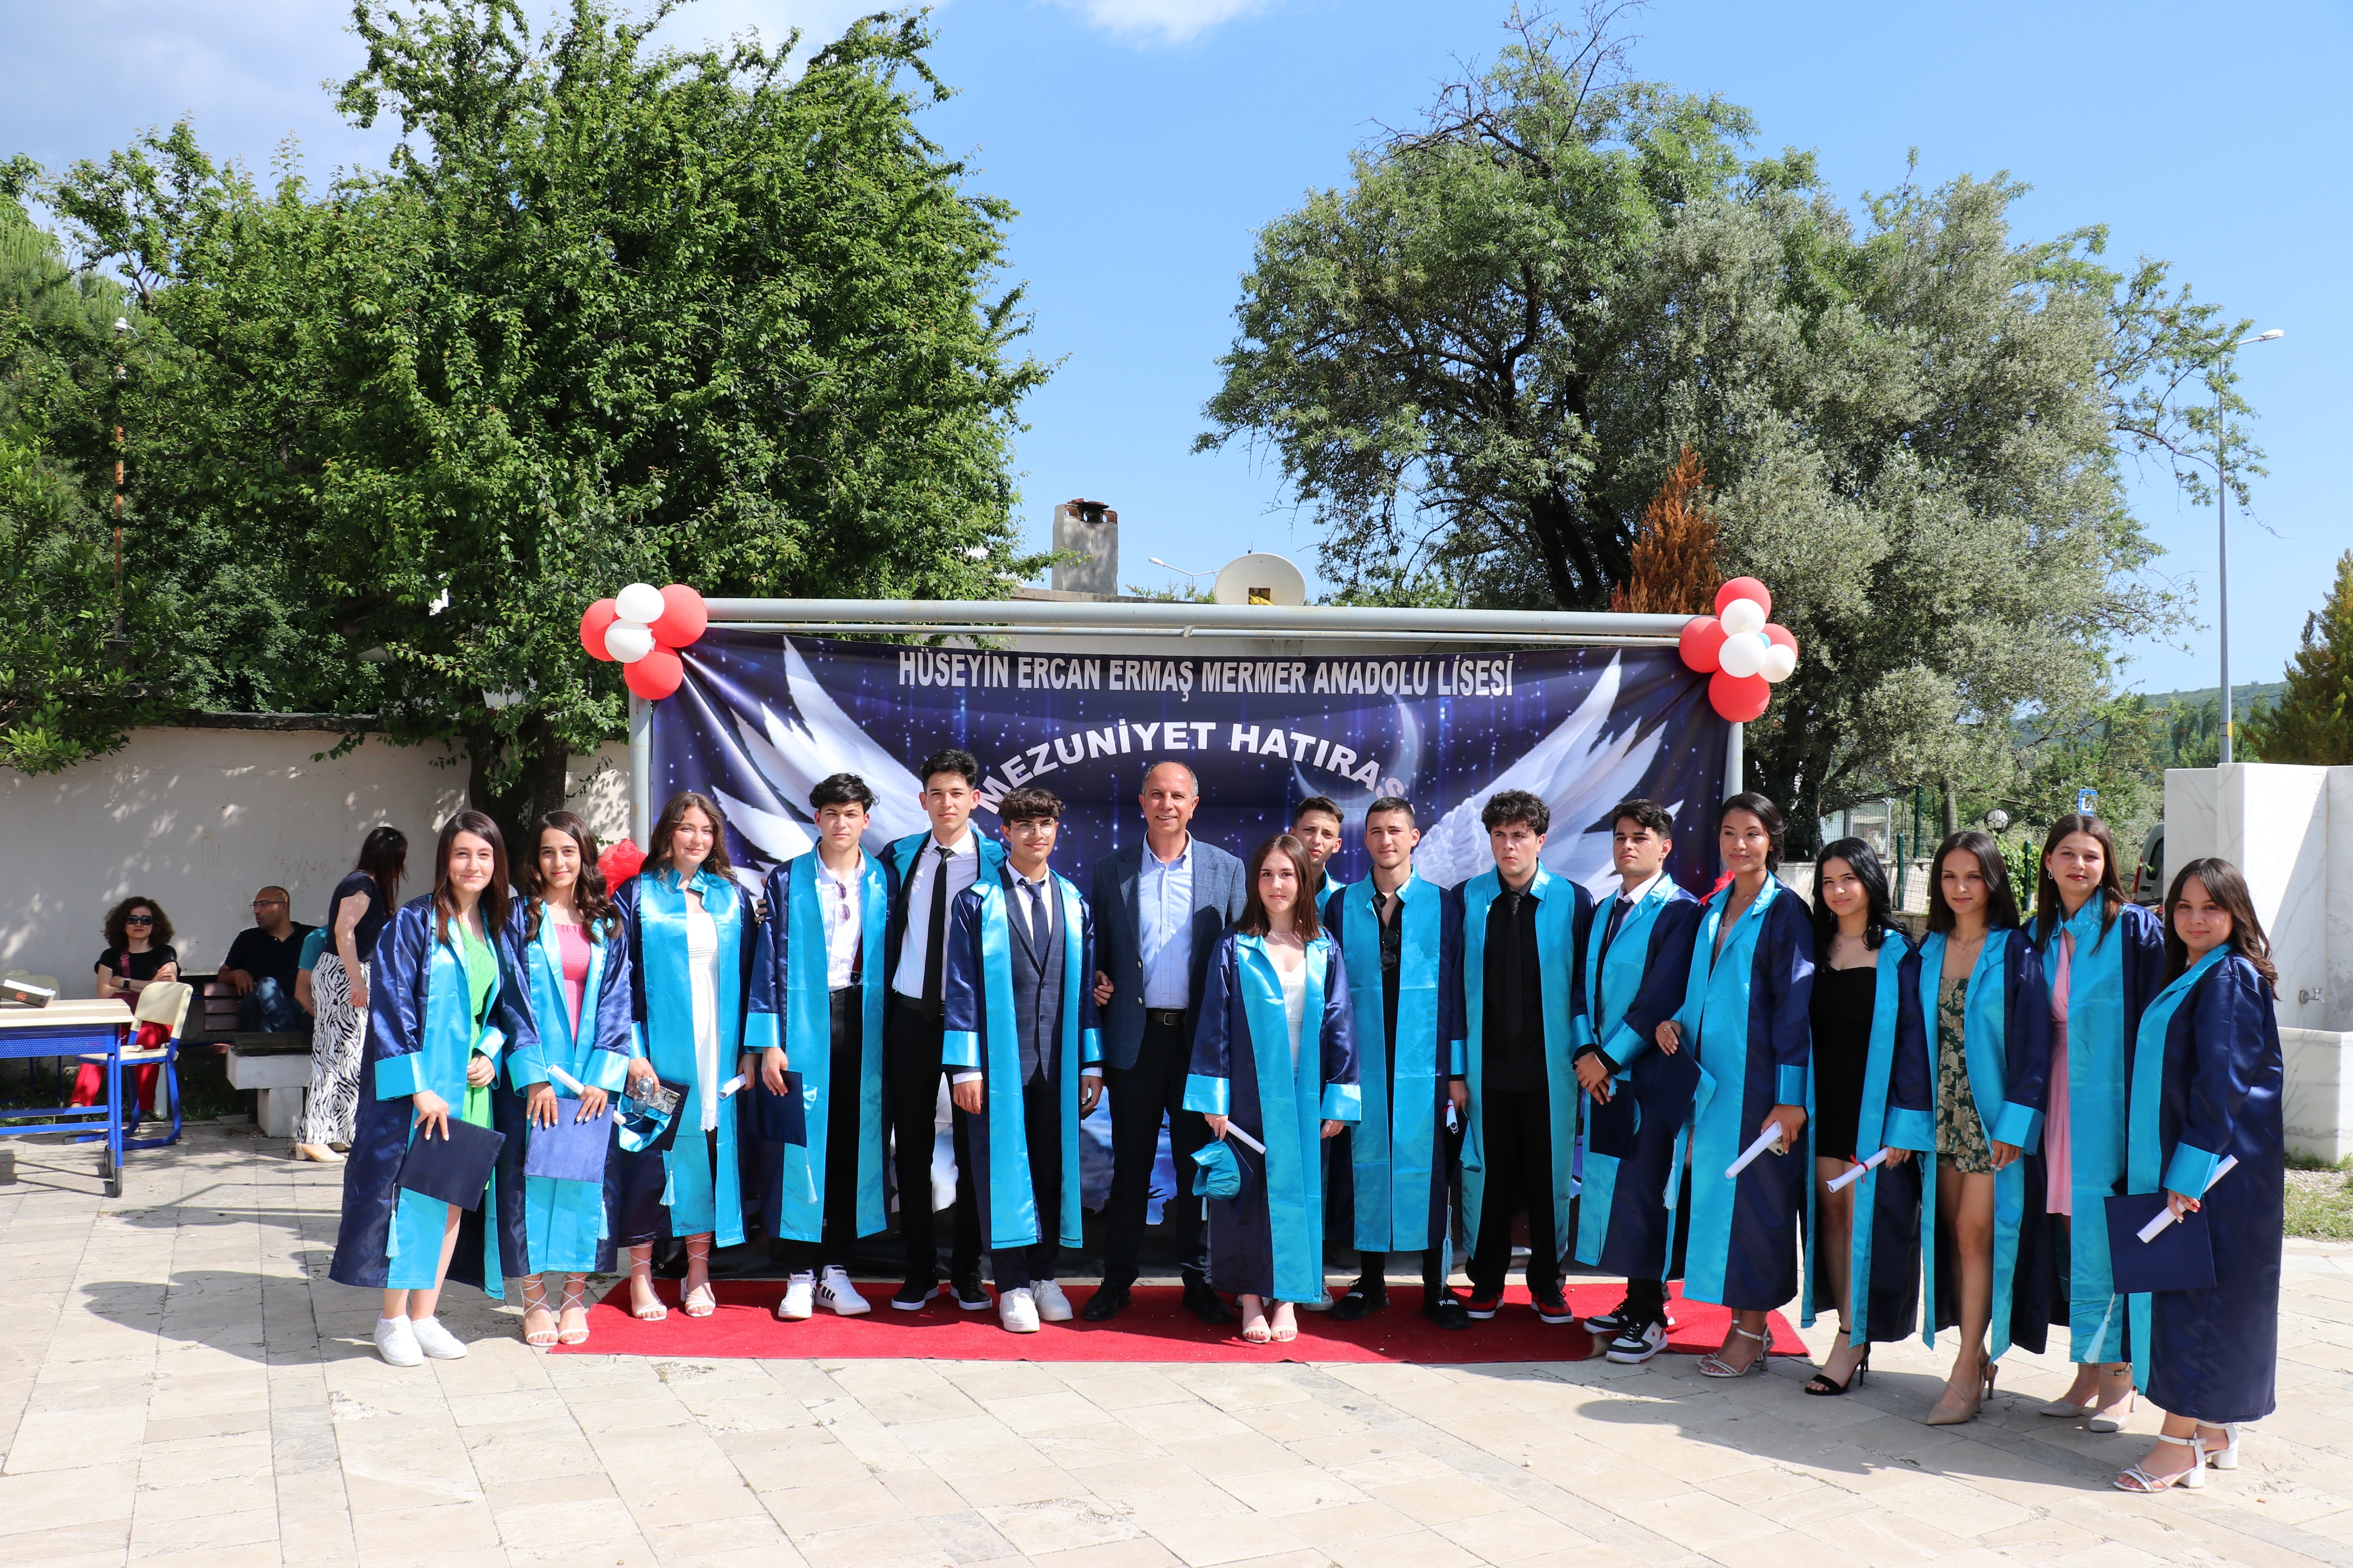 Başkan Ercan: “Öğrencilerimizi geleceğe hazırlamak için daima sorumluluk üstleneceğiz”